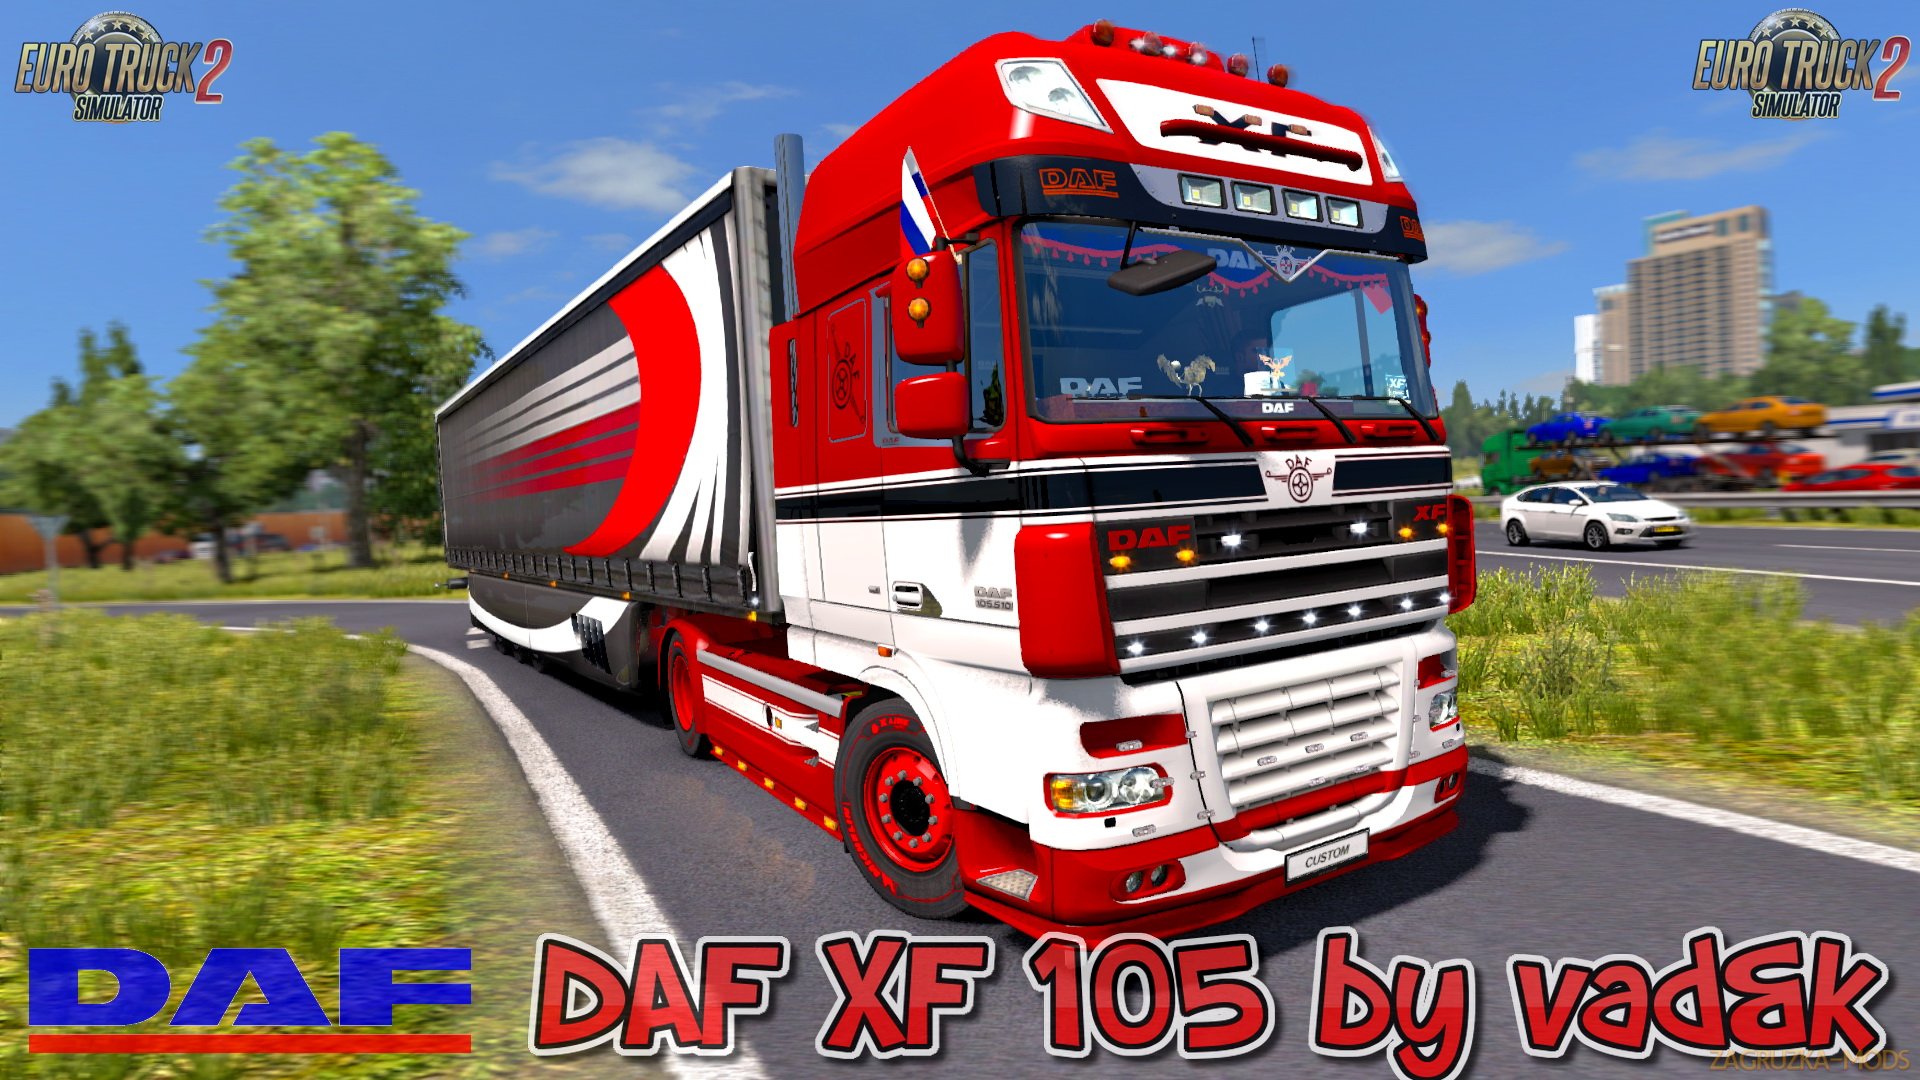 DAF XF 105 v5.4 by vad&k (1.30.x) for ETS 2